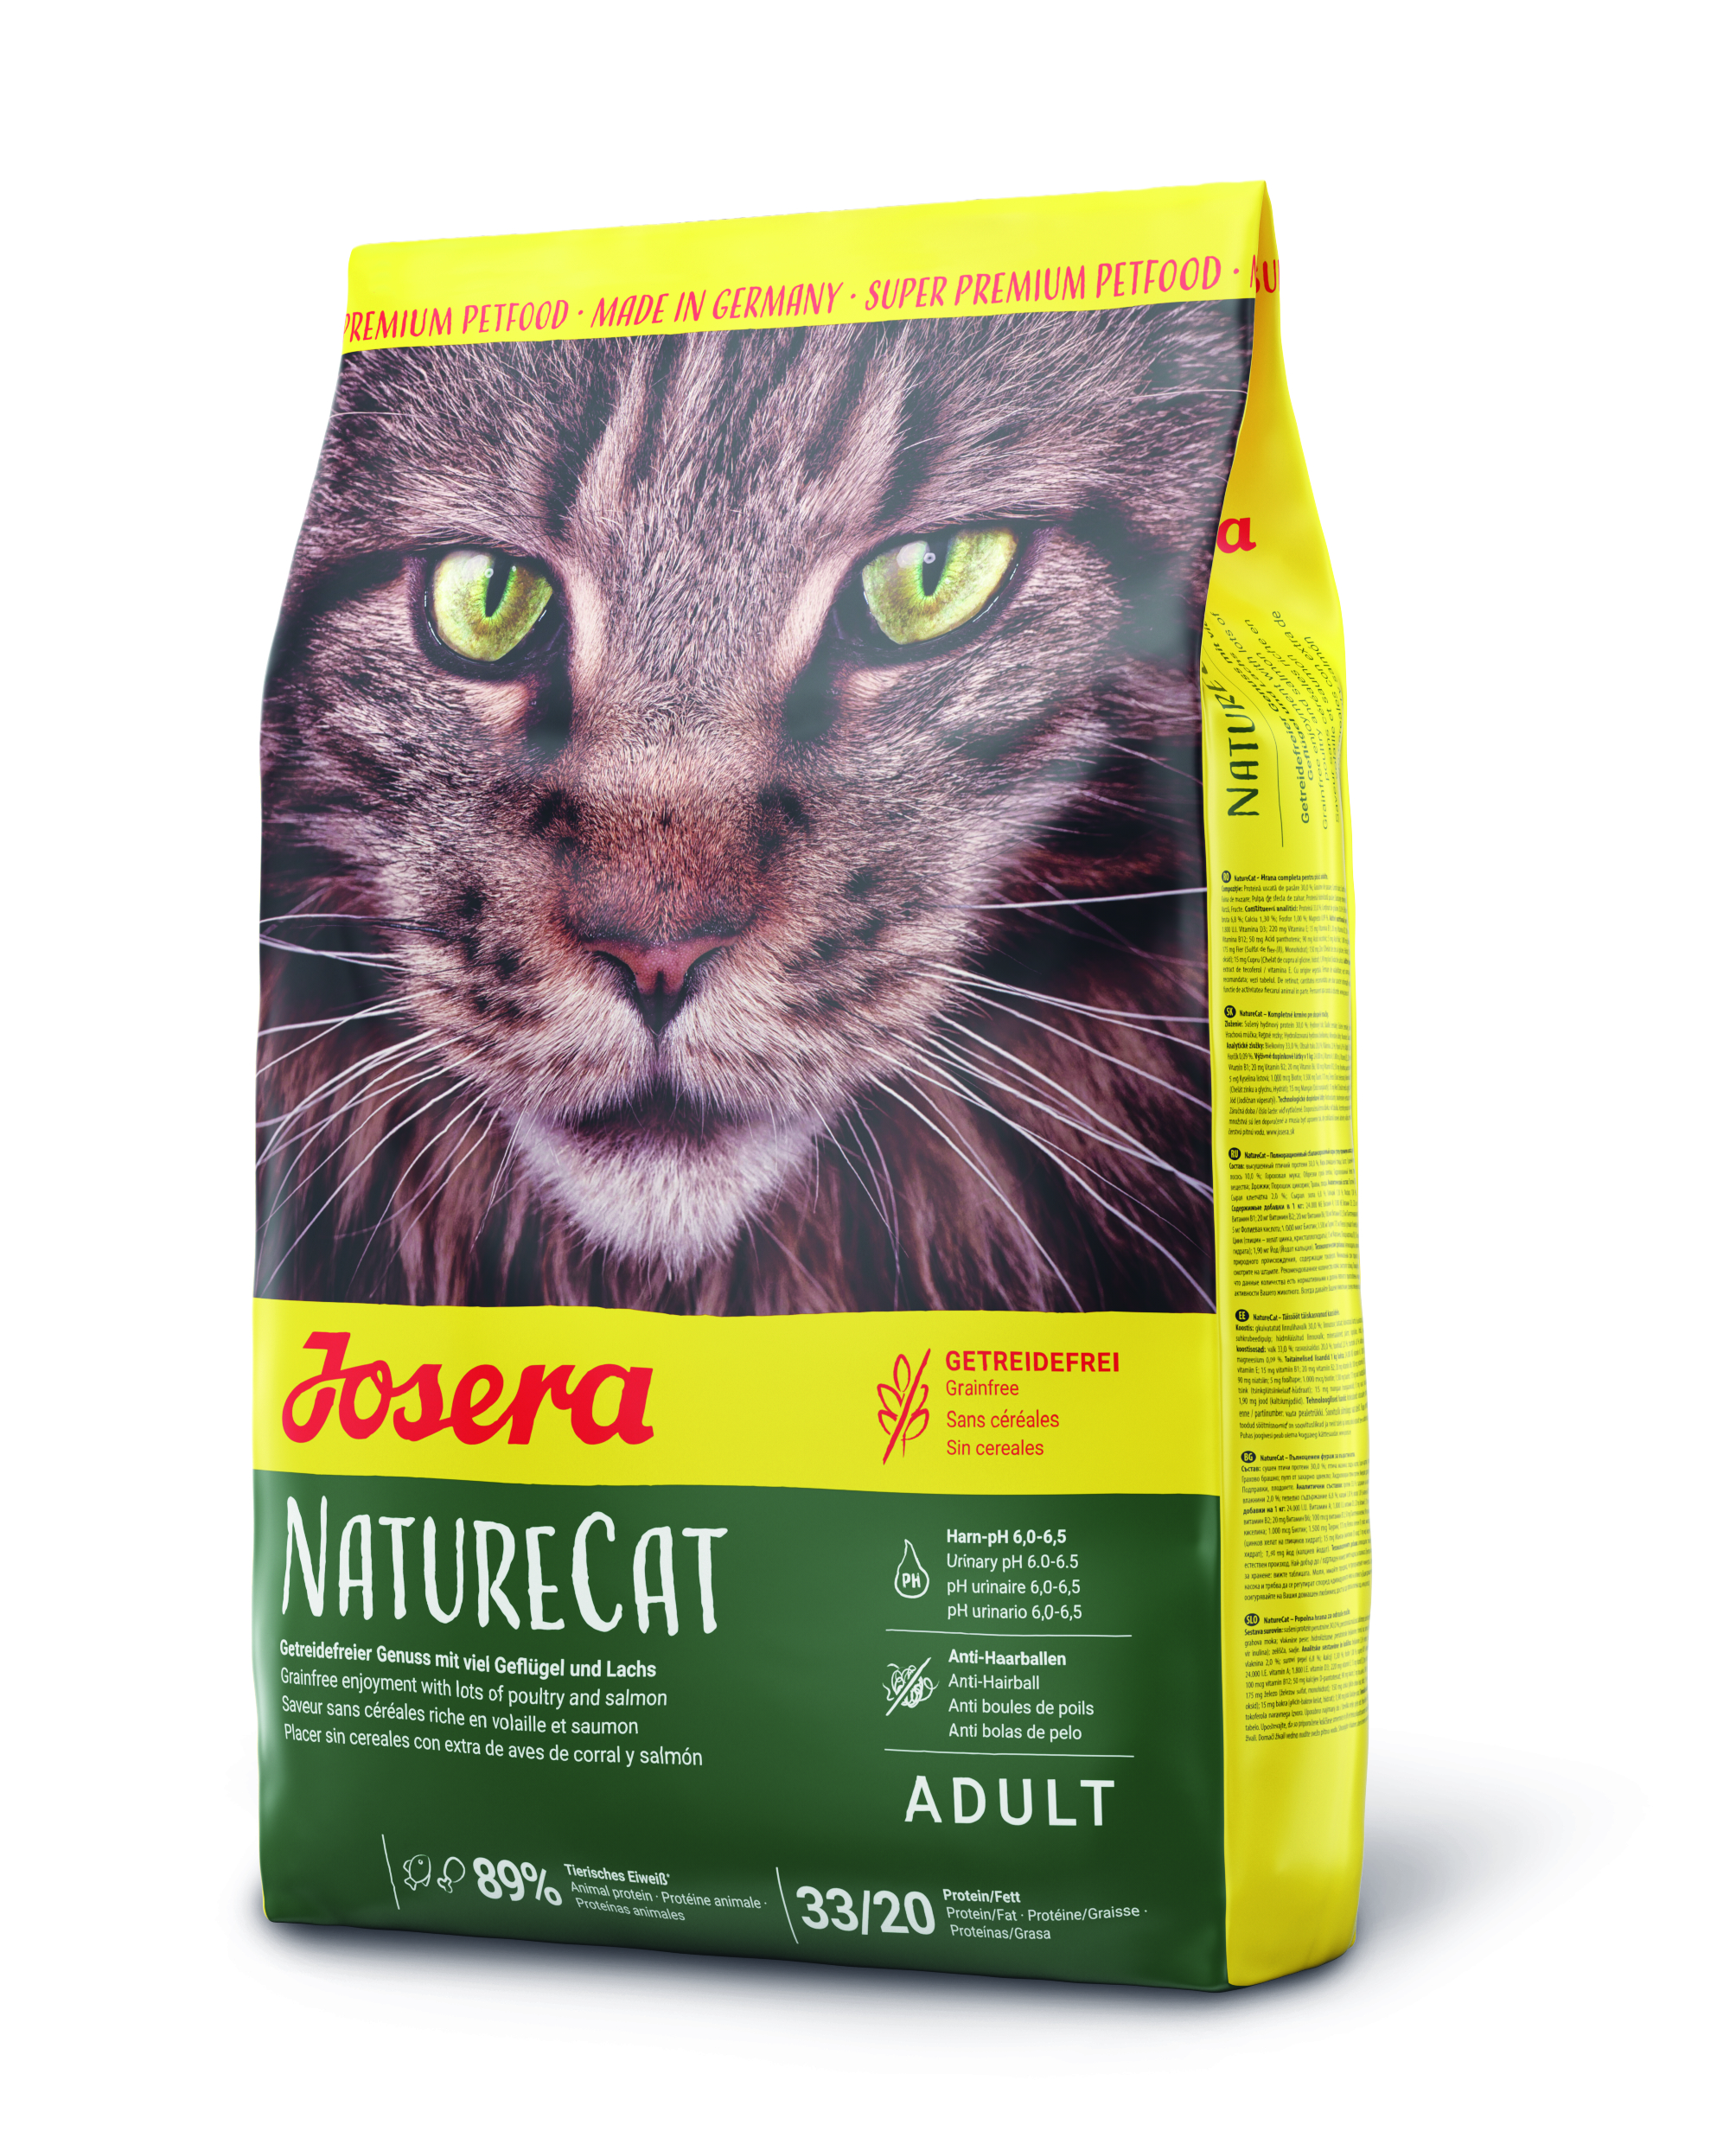 GRUNER Josera NatureCat 2kg neu Katzenfutter Super Premium